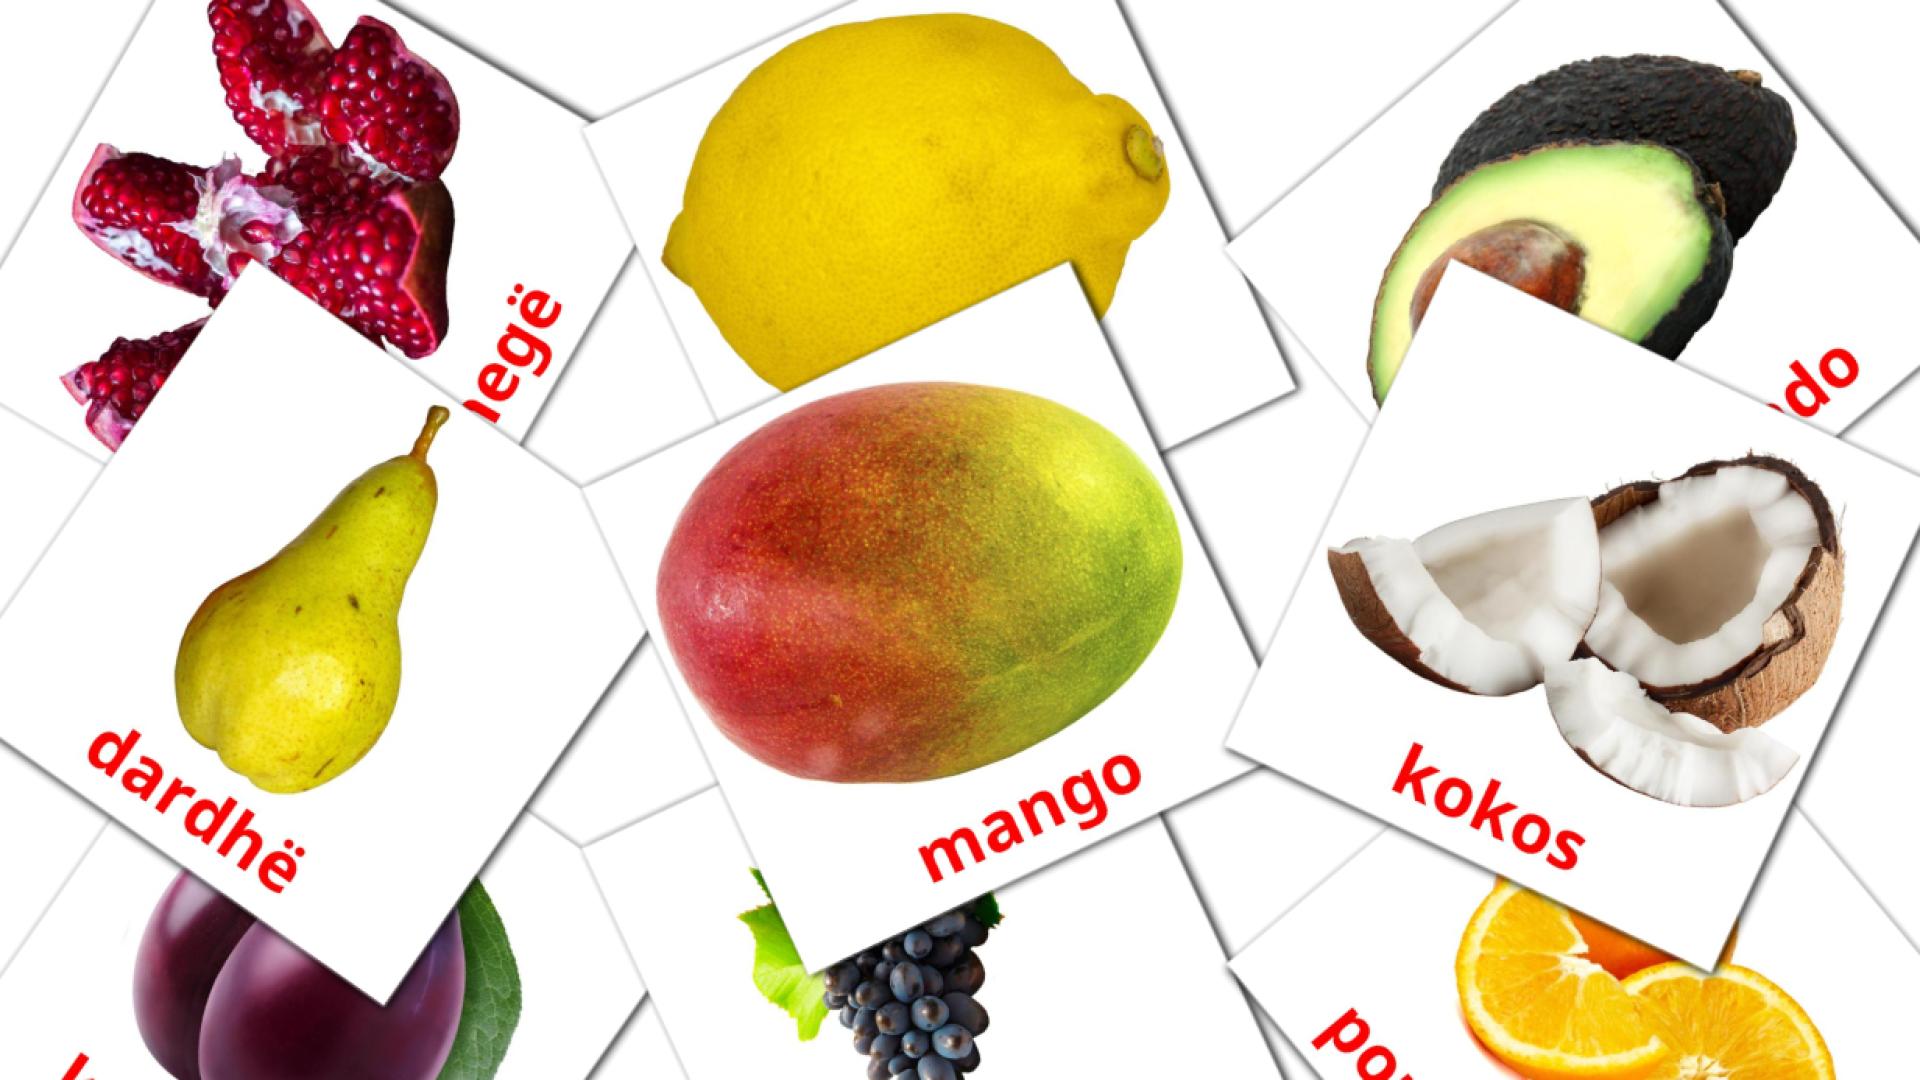 Fruits - albanian vocabulary cards